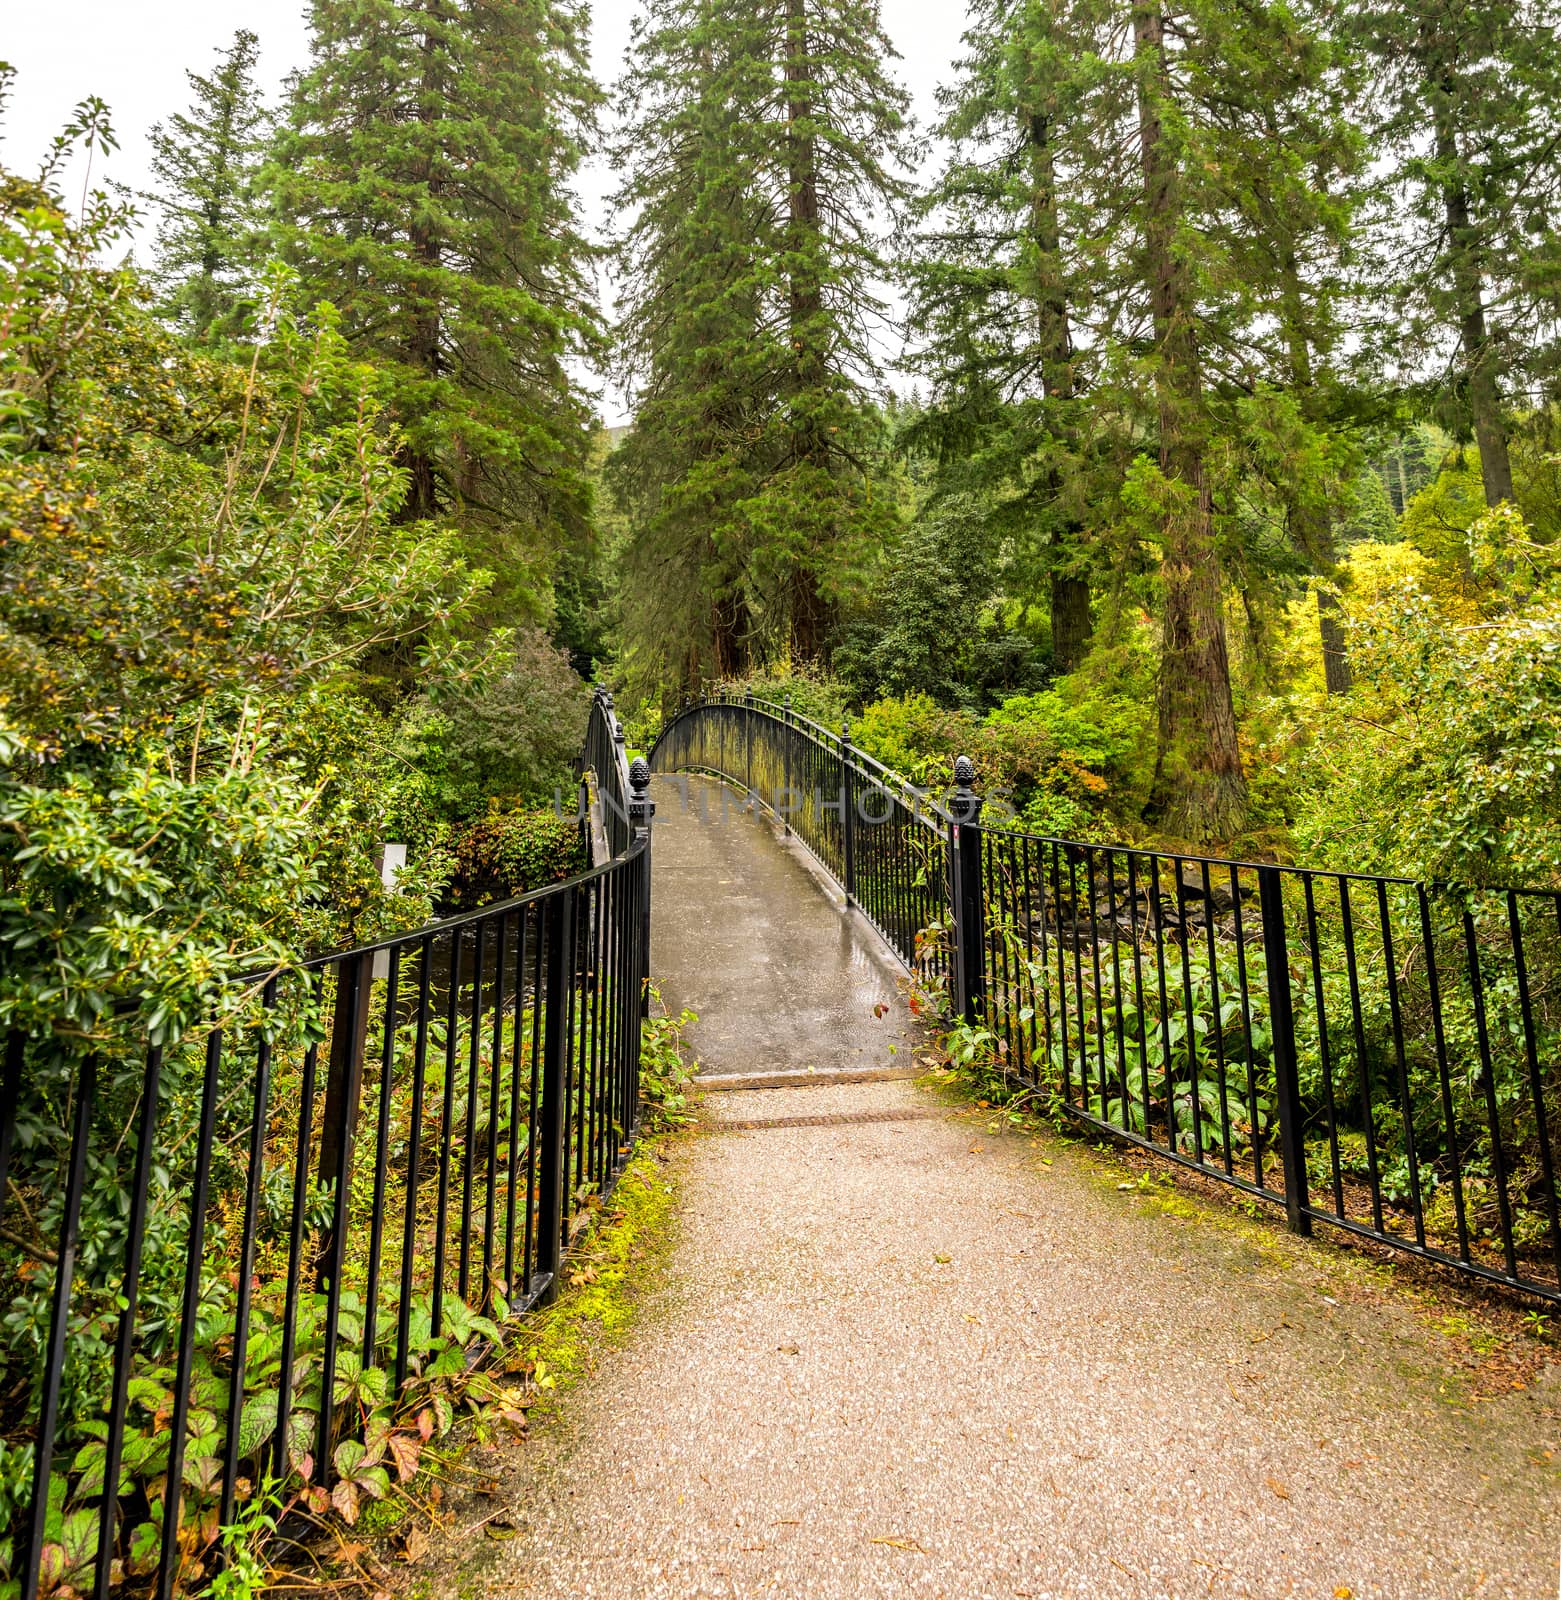 An entry visitor's bridge to Benmore Botanic Garden over river Eachaig, Scotland by anastasstyles